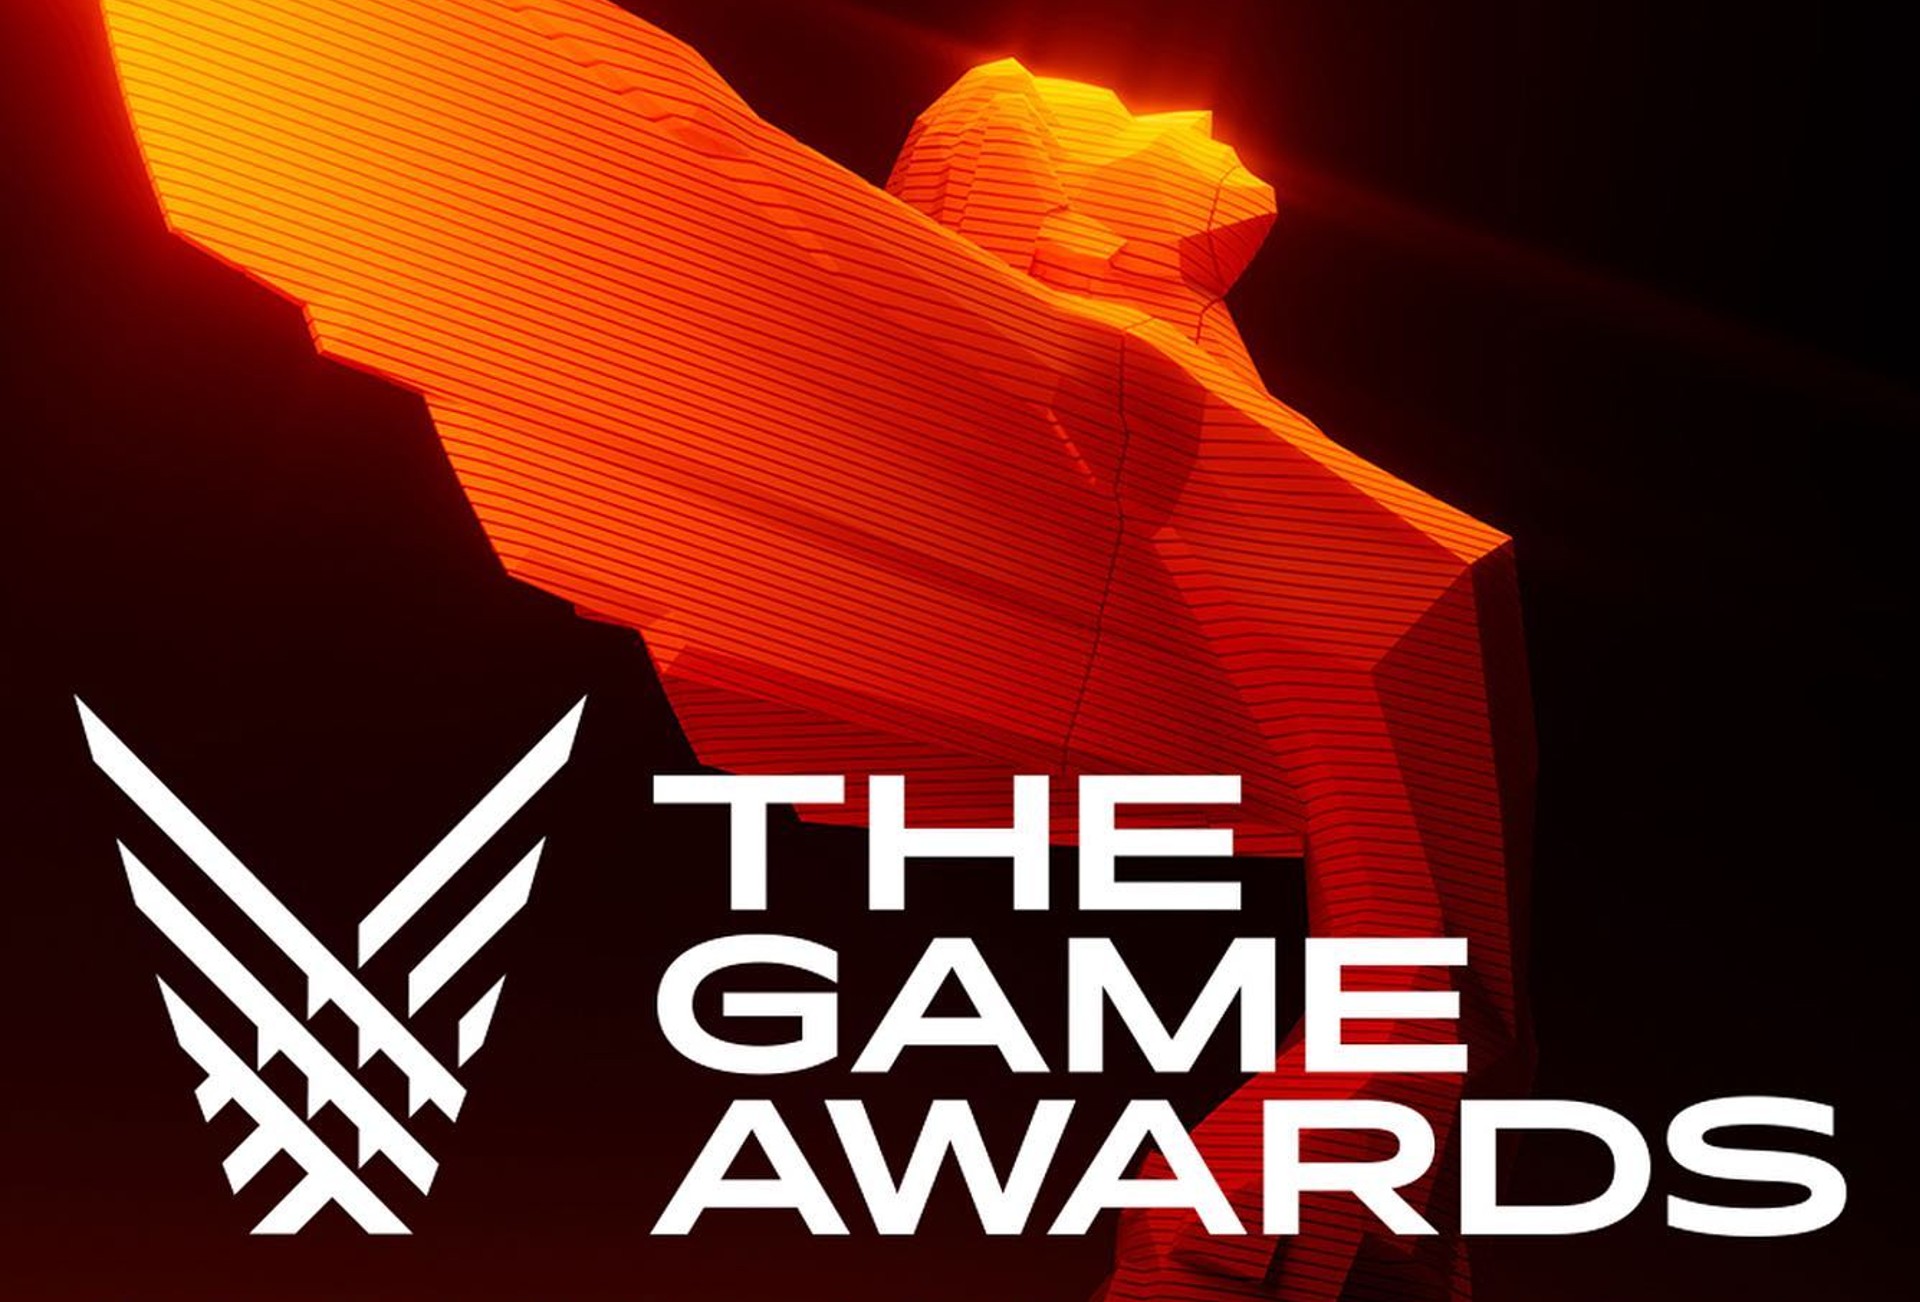 สรุปรางวัลทั้งหมด The Game Awards ประจำปี ค.ศ. 2022 Elden Ring คว้าเกมยอดเยี่ยมแห่งปี